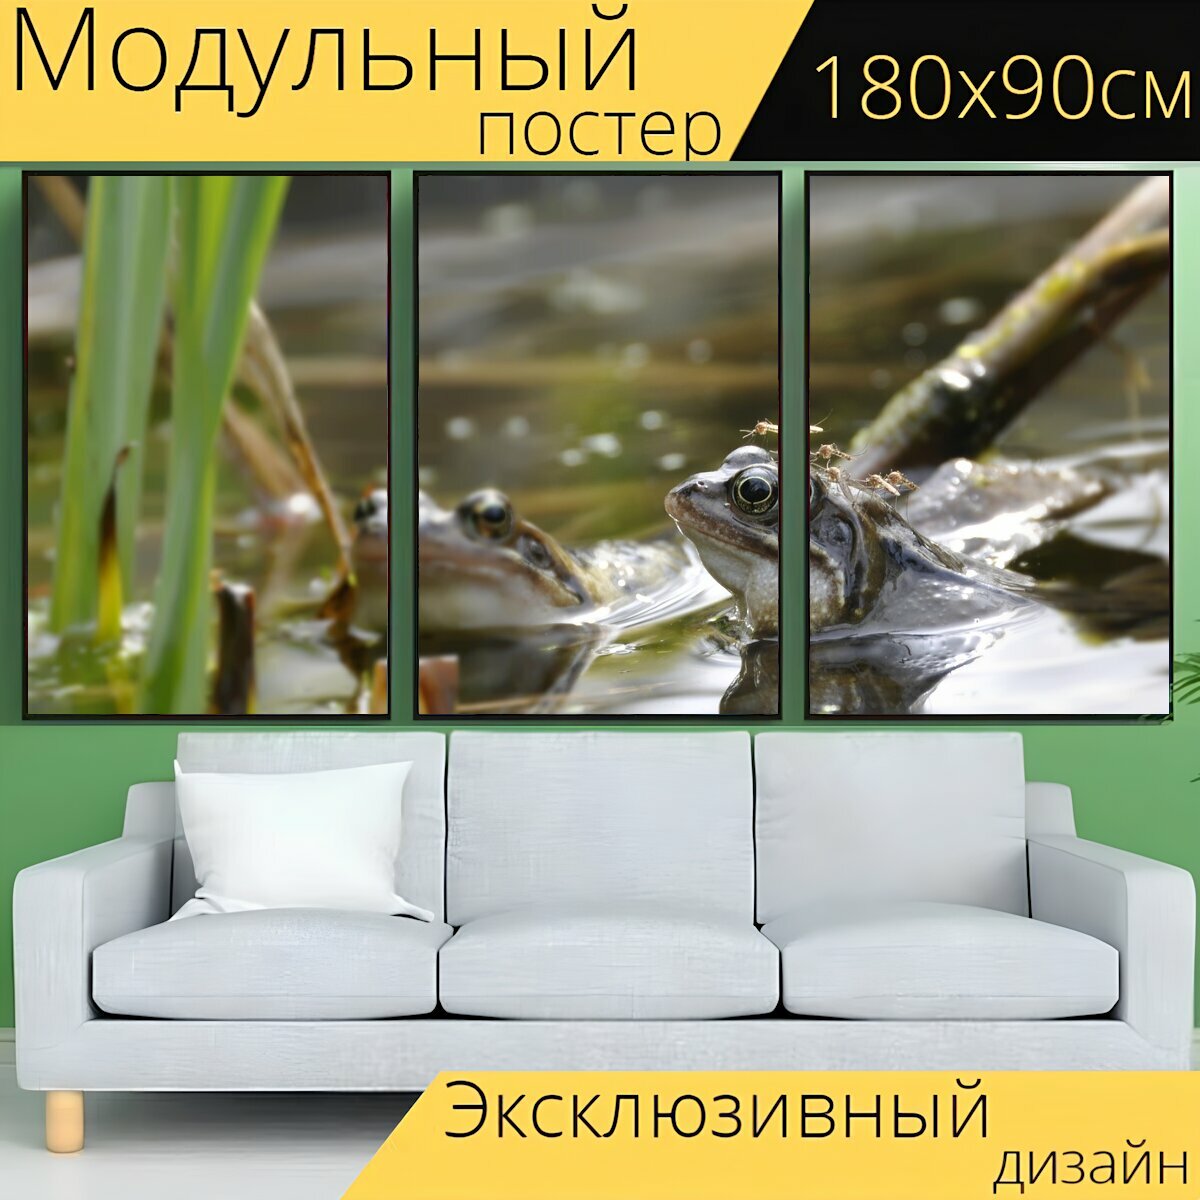 Модульный постер "Лягушка, пруд, грин" 180 x 90 см. для интерьера